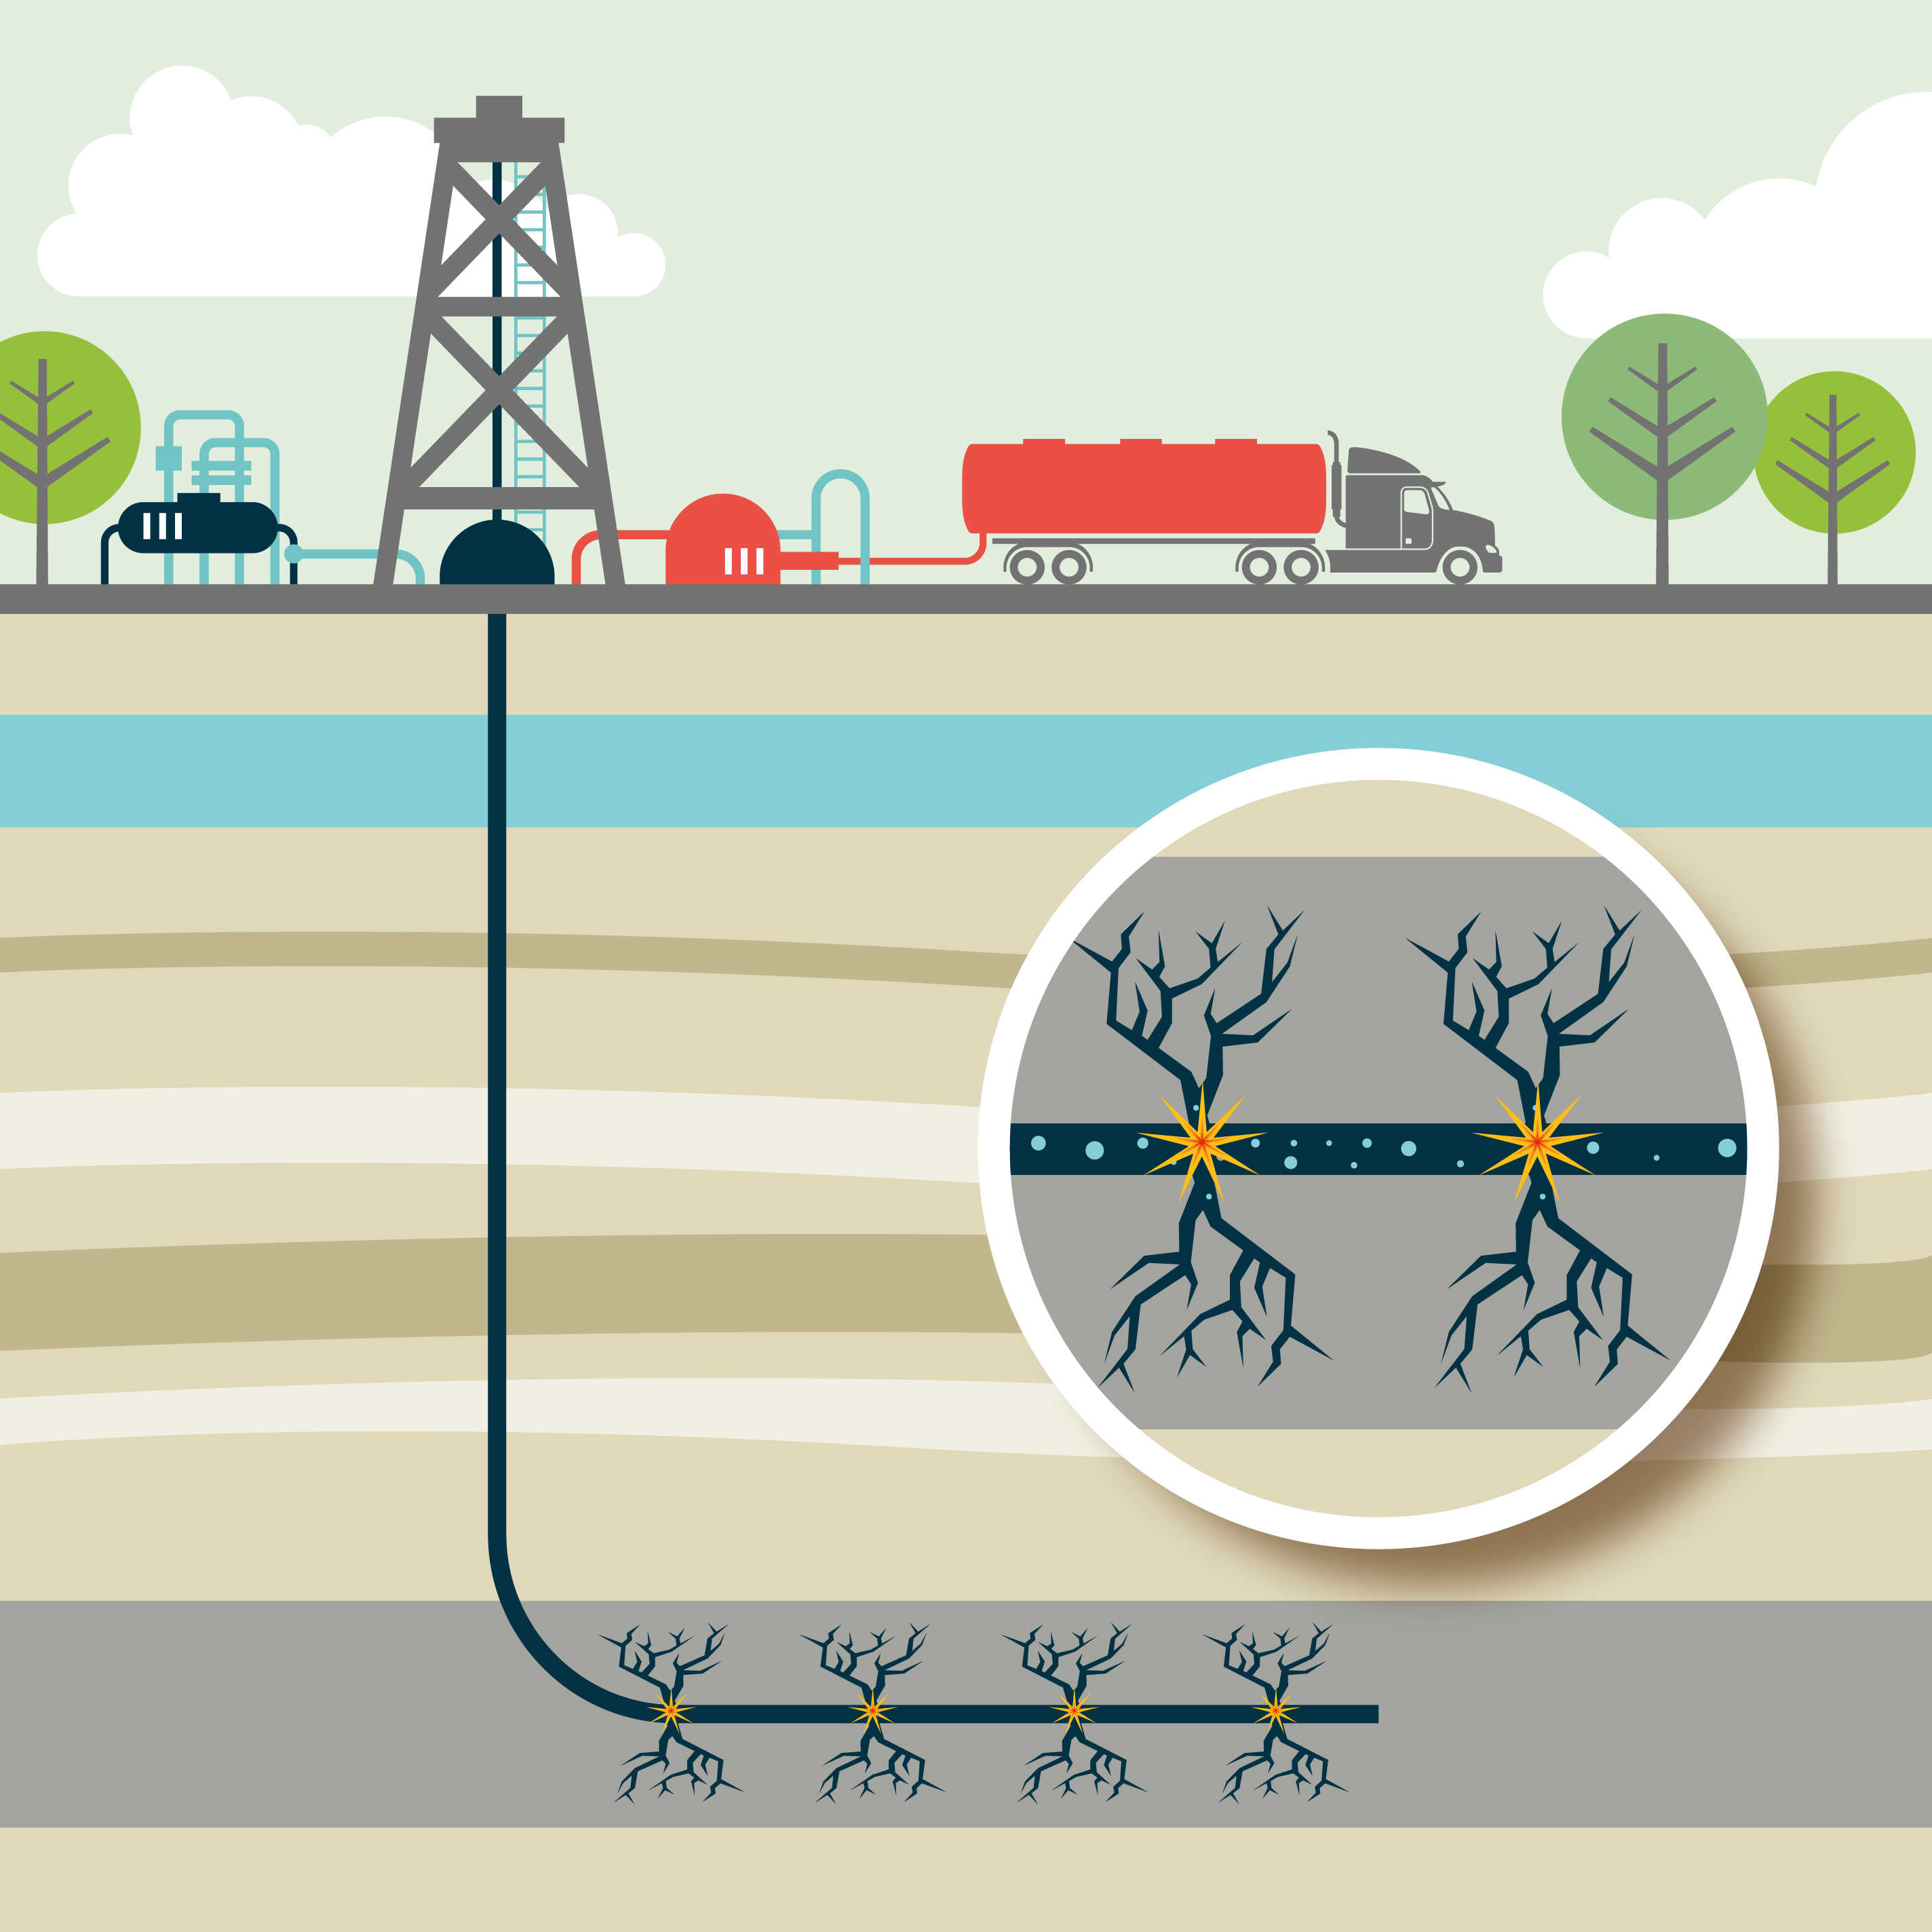 Energías renovables y fracking: La eólica es cuatro veces más eficiente que el fracking.